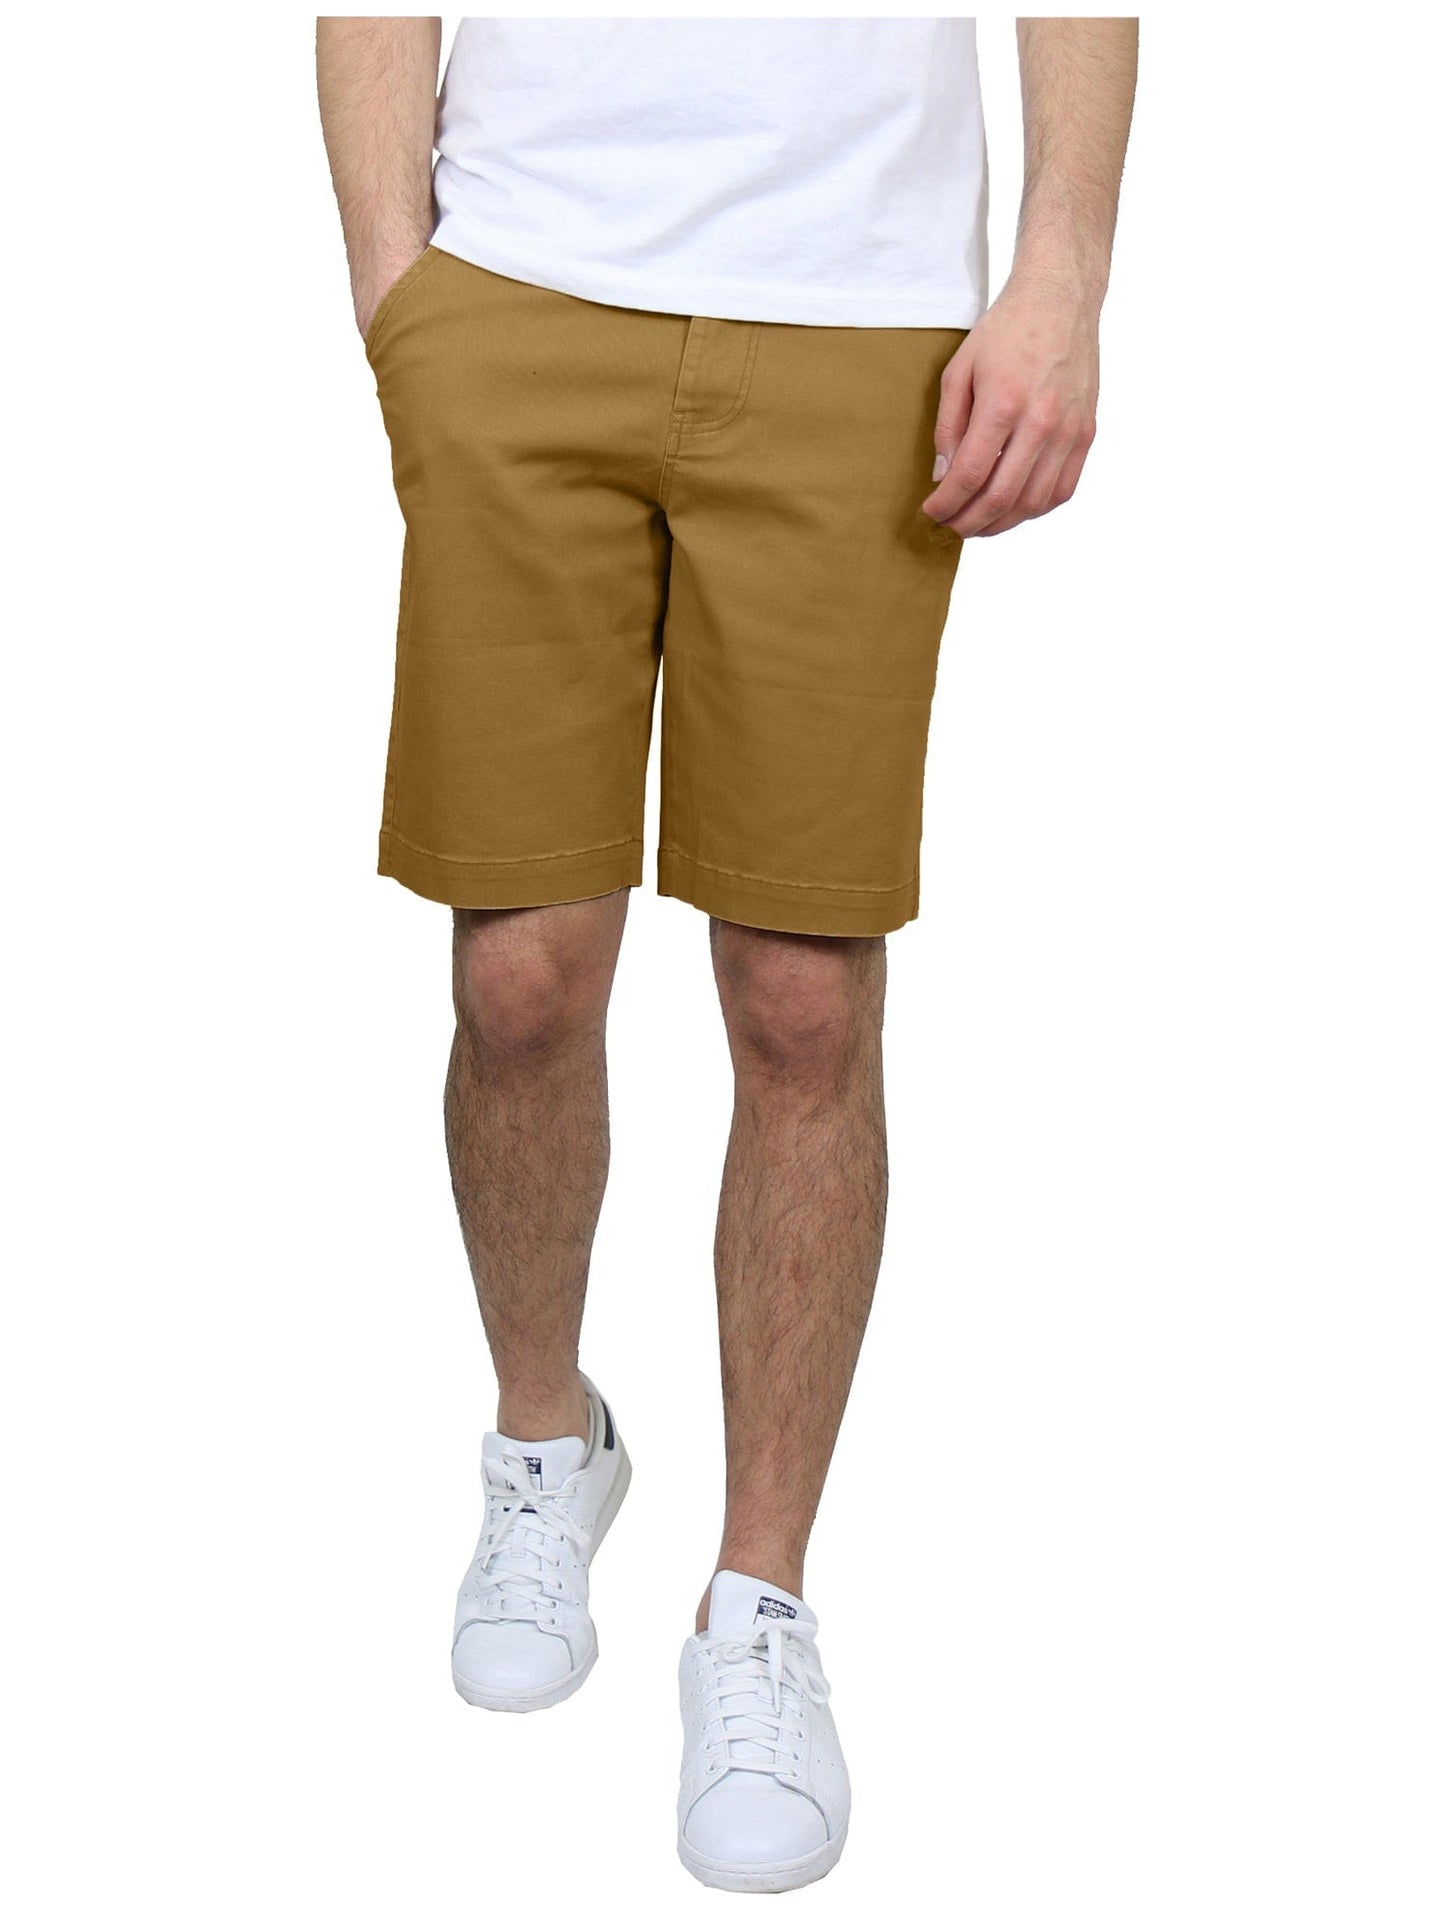 Pantalones cortos chinos elásticos de algodón con frente plano y corte entallado para hombre (tallas 30-42) 